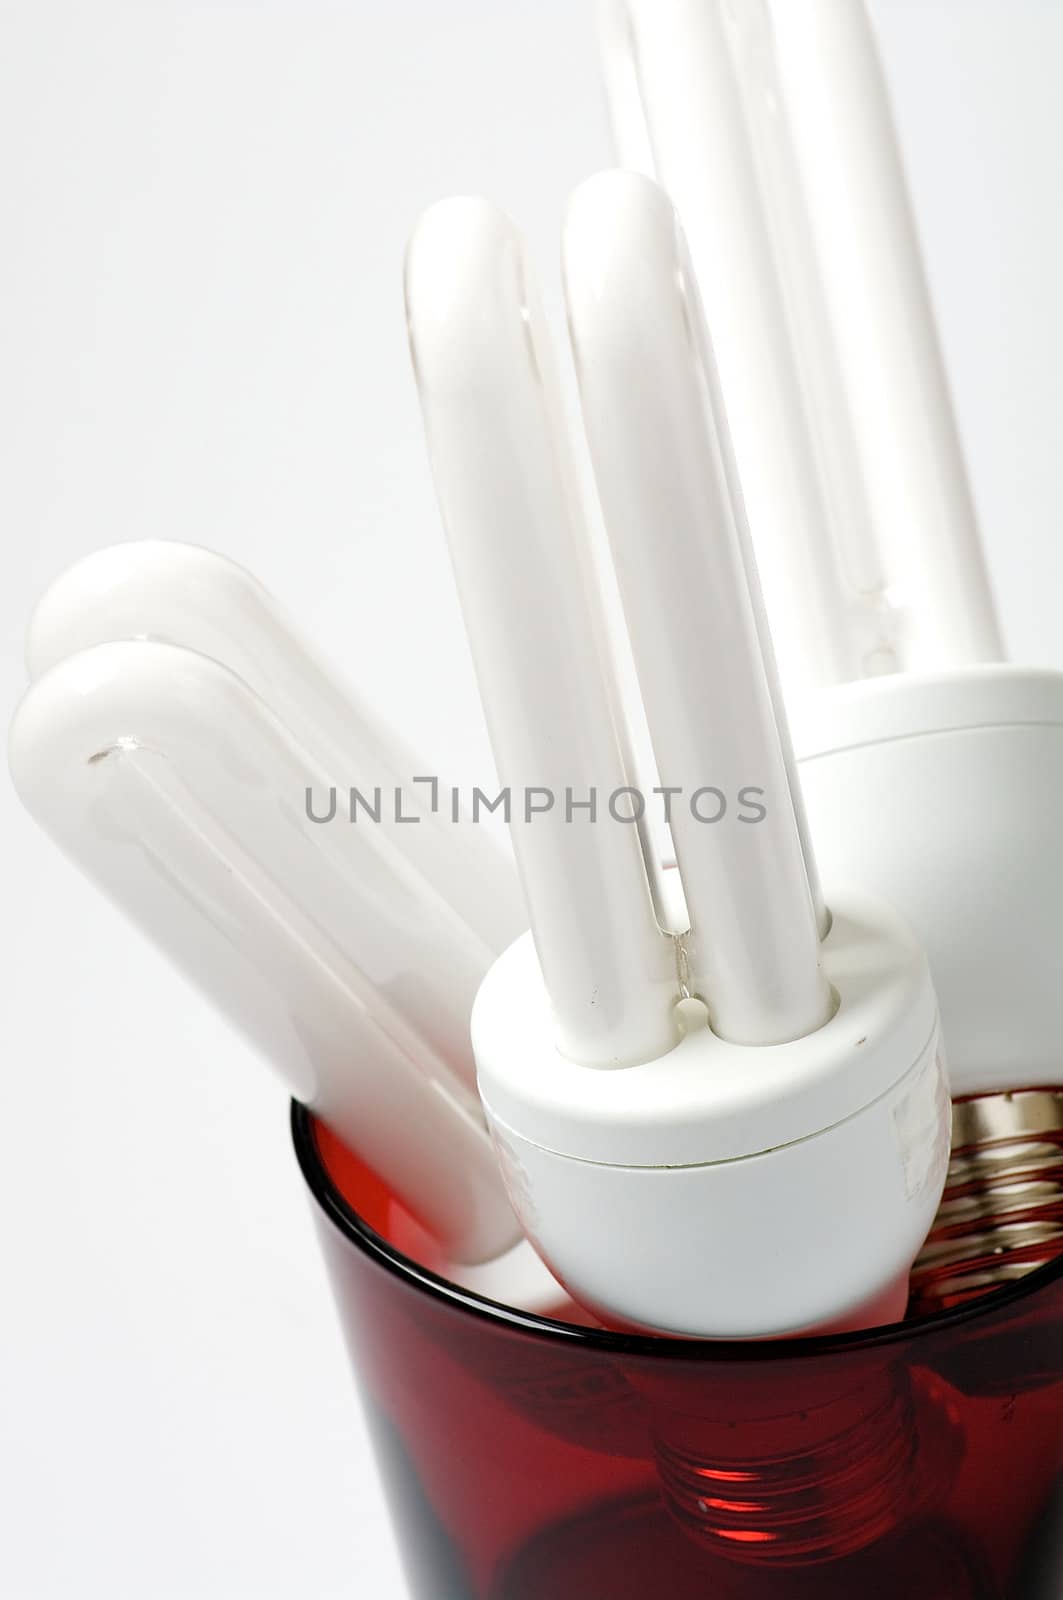 Lightbulbs by zhekos